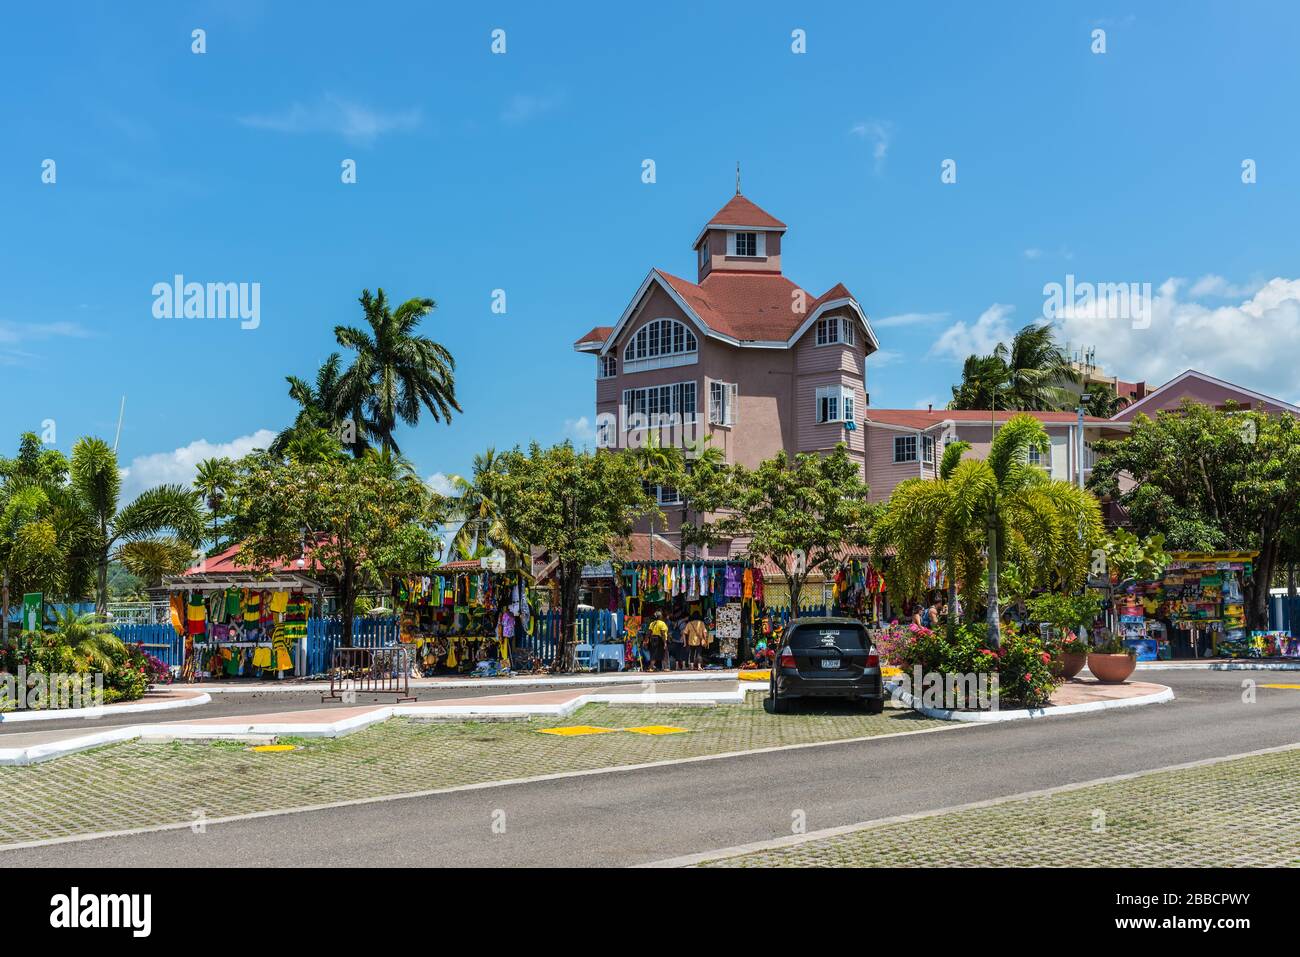 Ocho Rios, Giamaica - 22 aprile 2019: Mercato di strada souvenir nell'isola tropicale dei Caraibi di Ocho Rios, Giamaica. Foto Stock